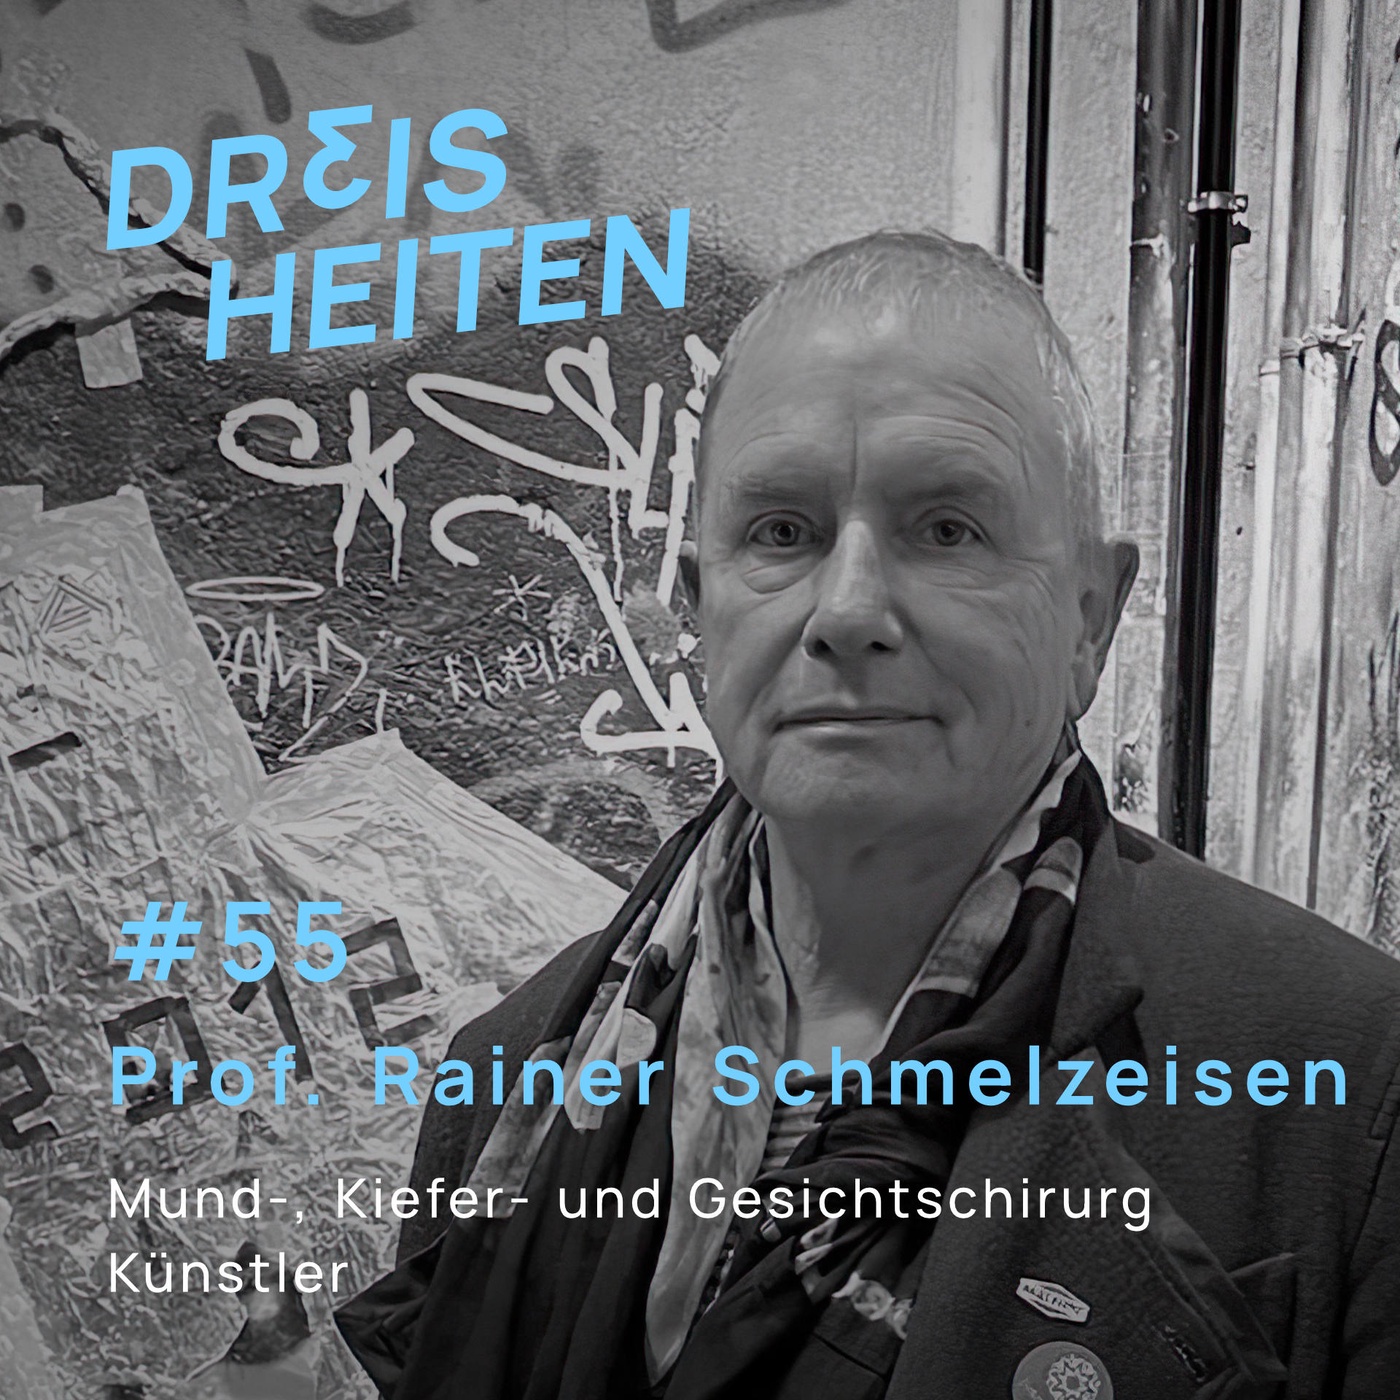 #55 - Prof. Rainer Schmelzeisen - Mund-, Kiefer- und Gesichtschirurg und Künstler - Lebenserfahrung & Weisheiten